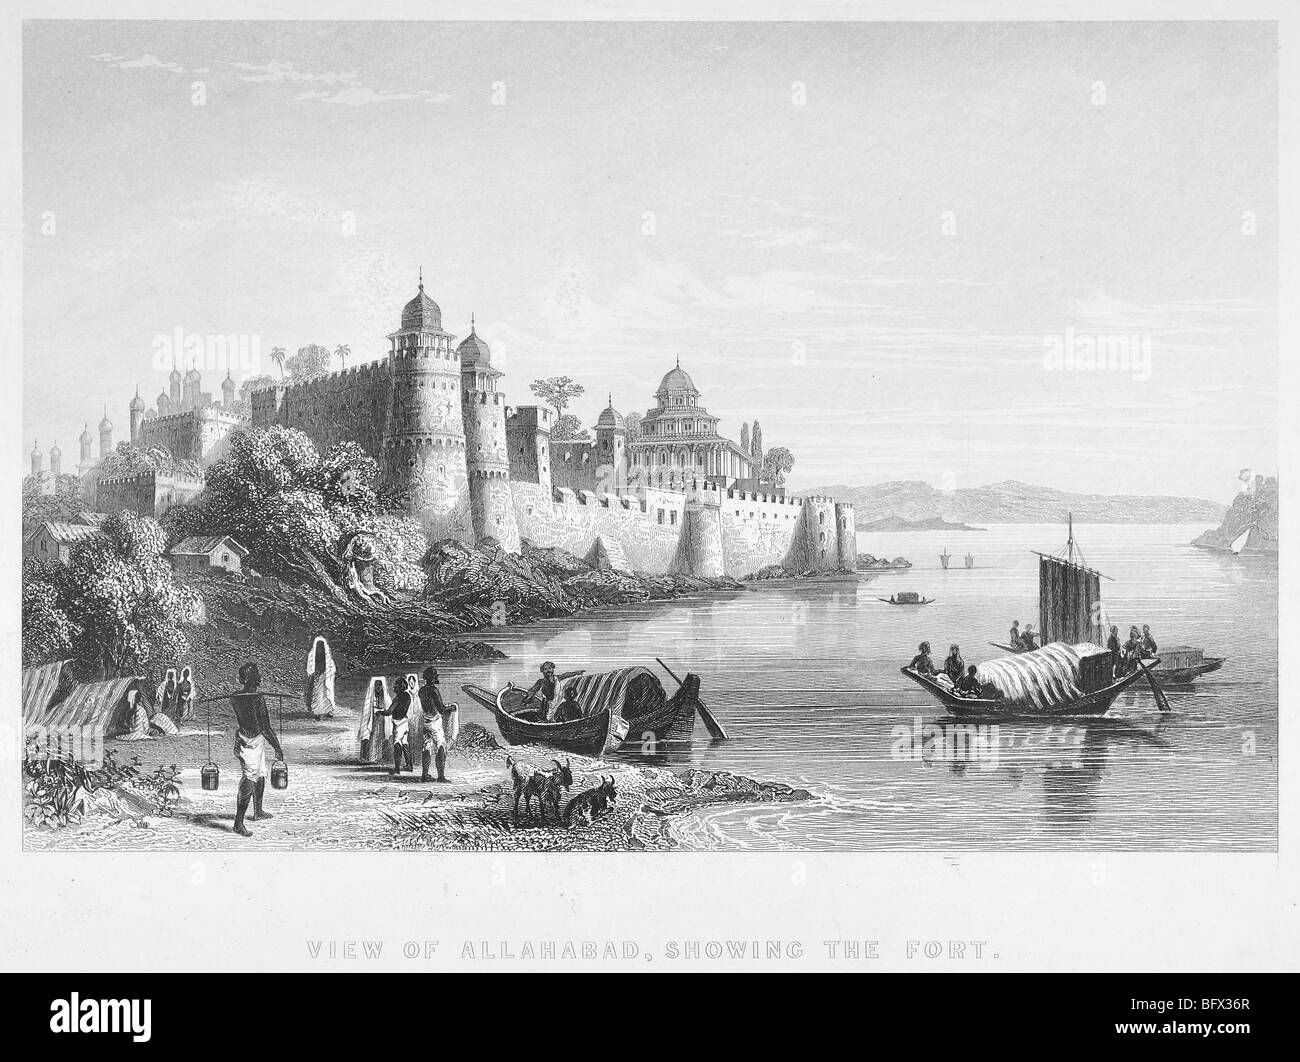 Ansicht von Allahabad, zeigt das Fort Stockfoto